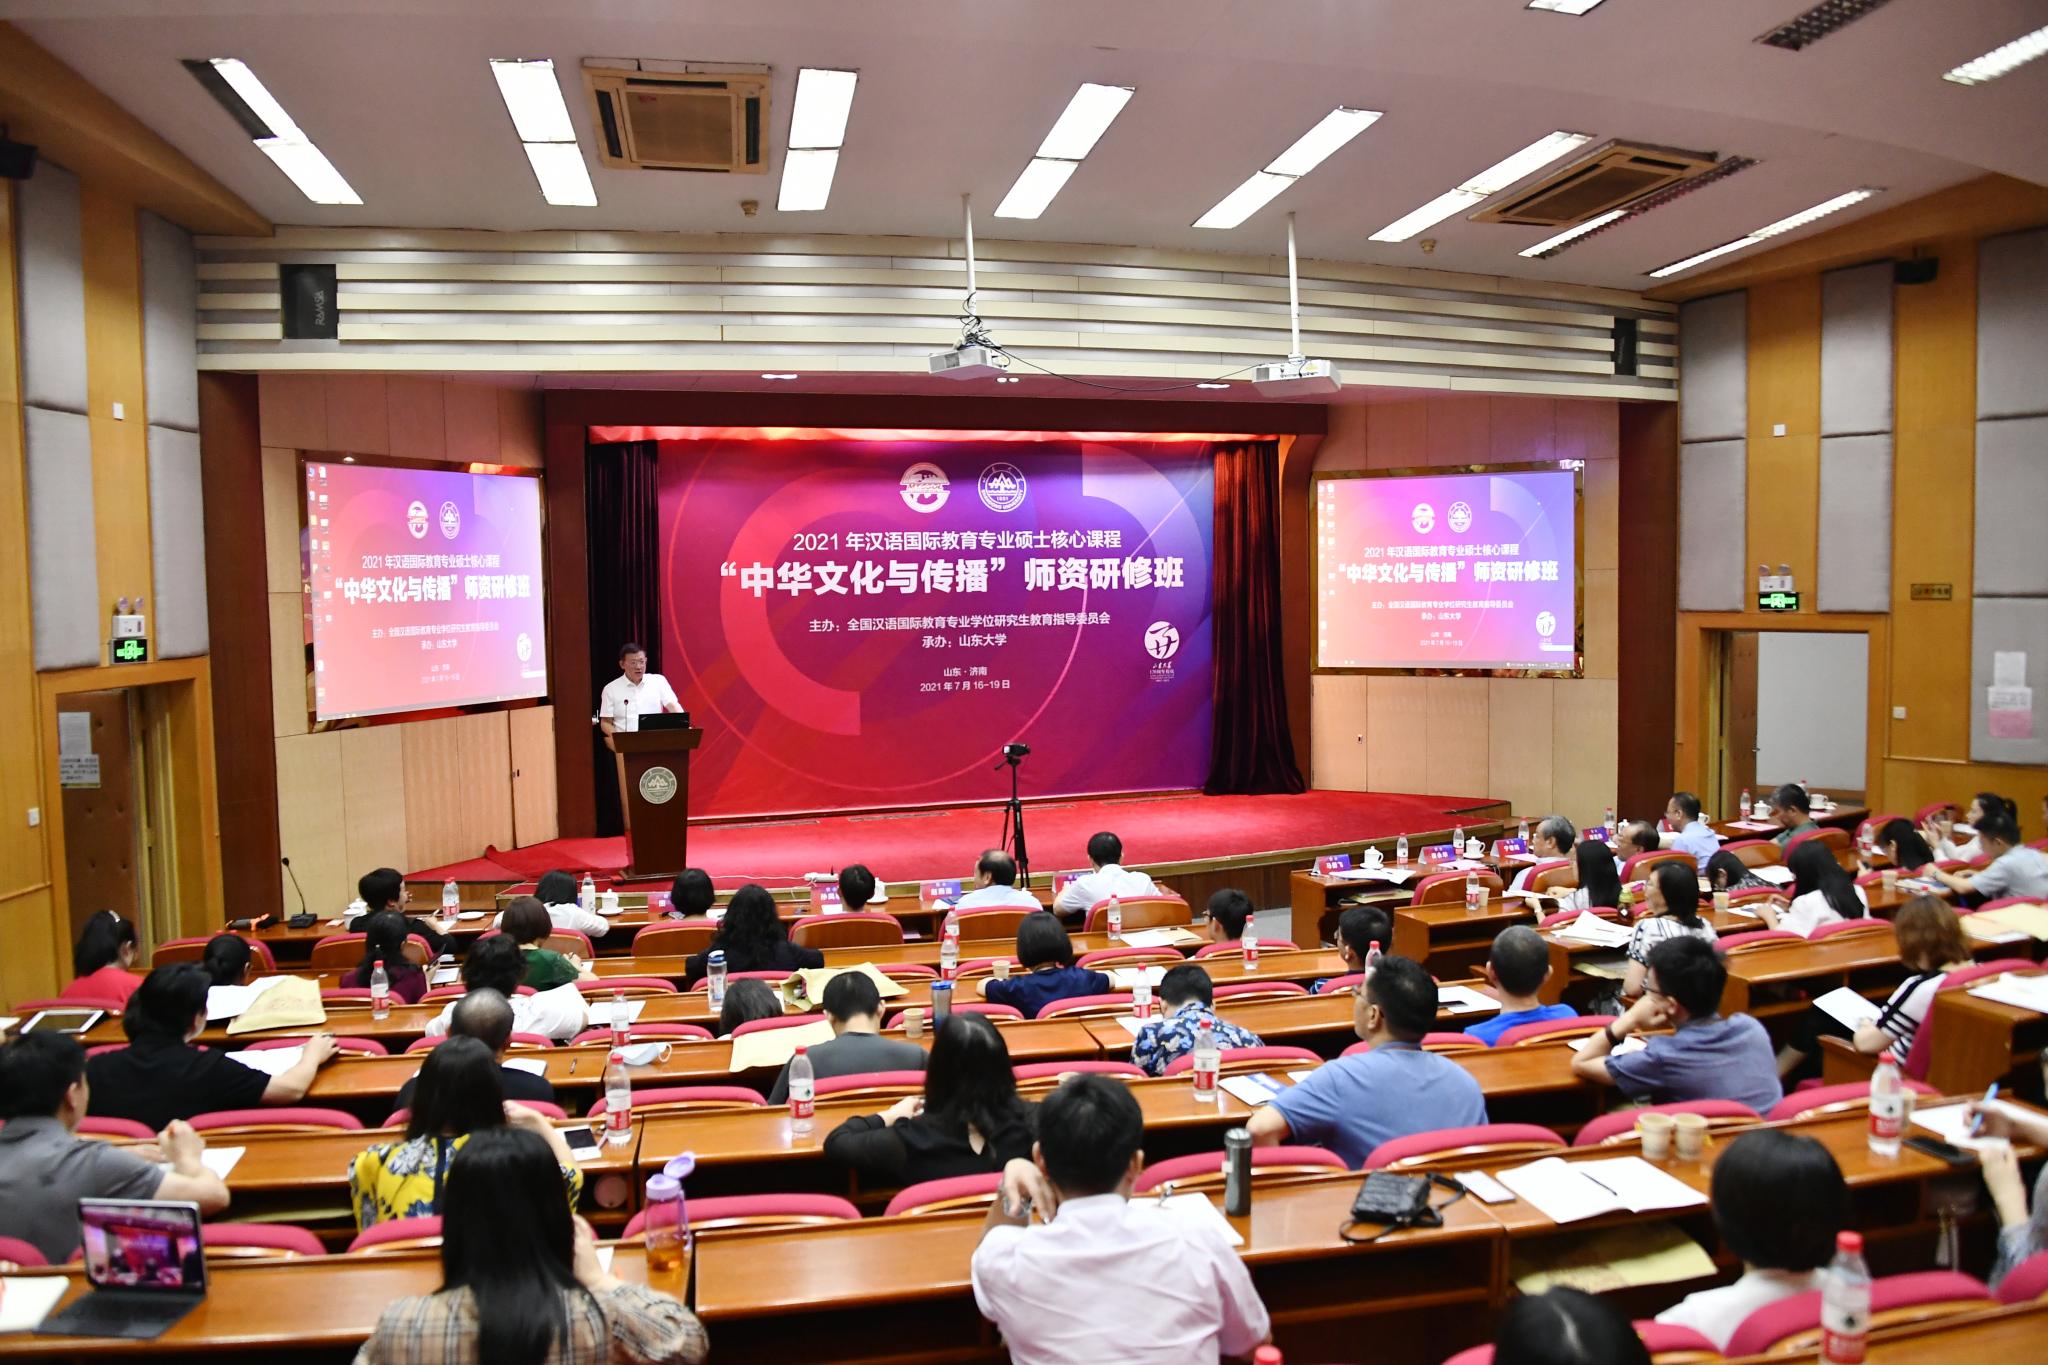 2021年全国汉语国际教育专业硕士核心课程“中华文化与传播”师资研修班